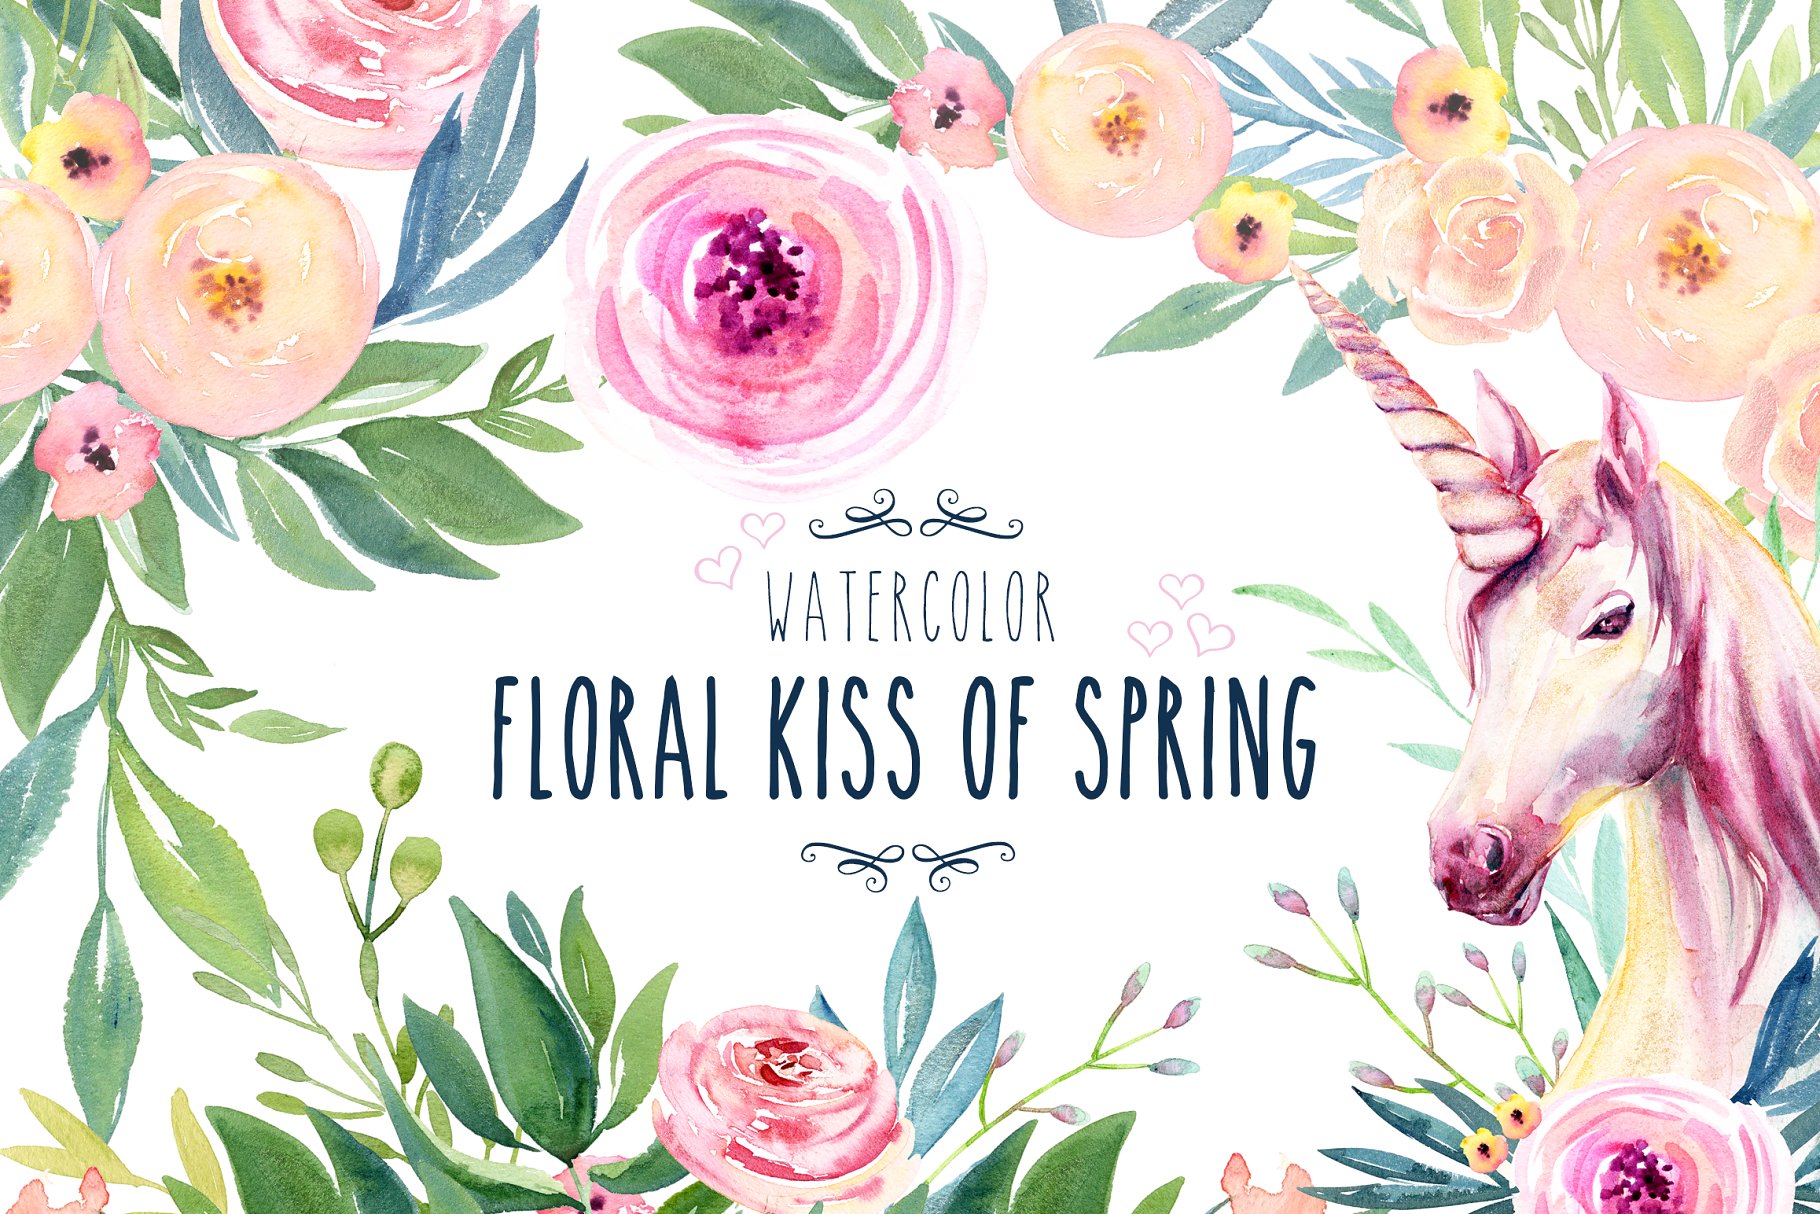 春天之吻水彩花卉剪贴画 Watercolor Floral Kiss of Spring插图